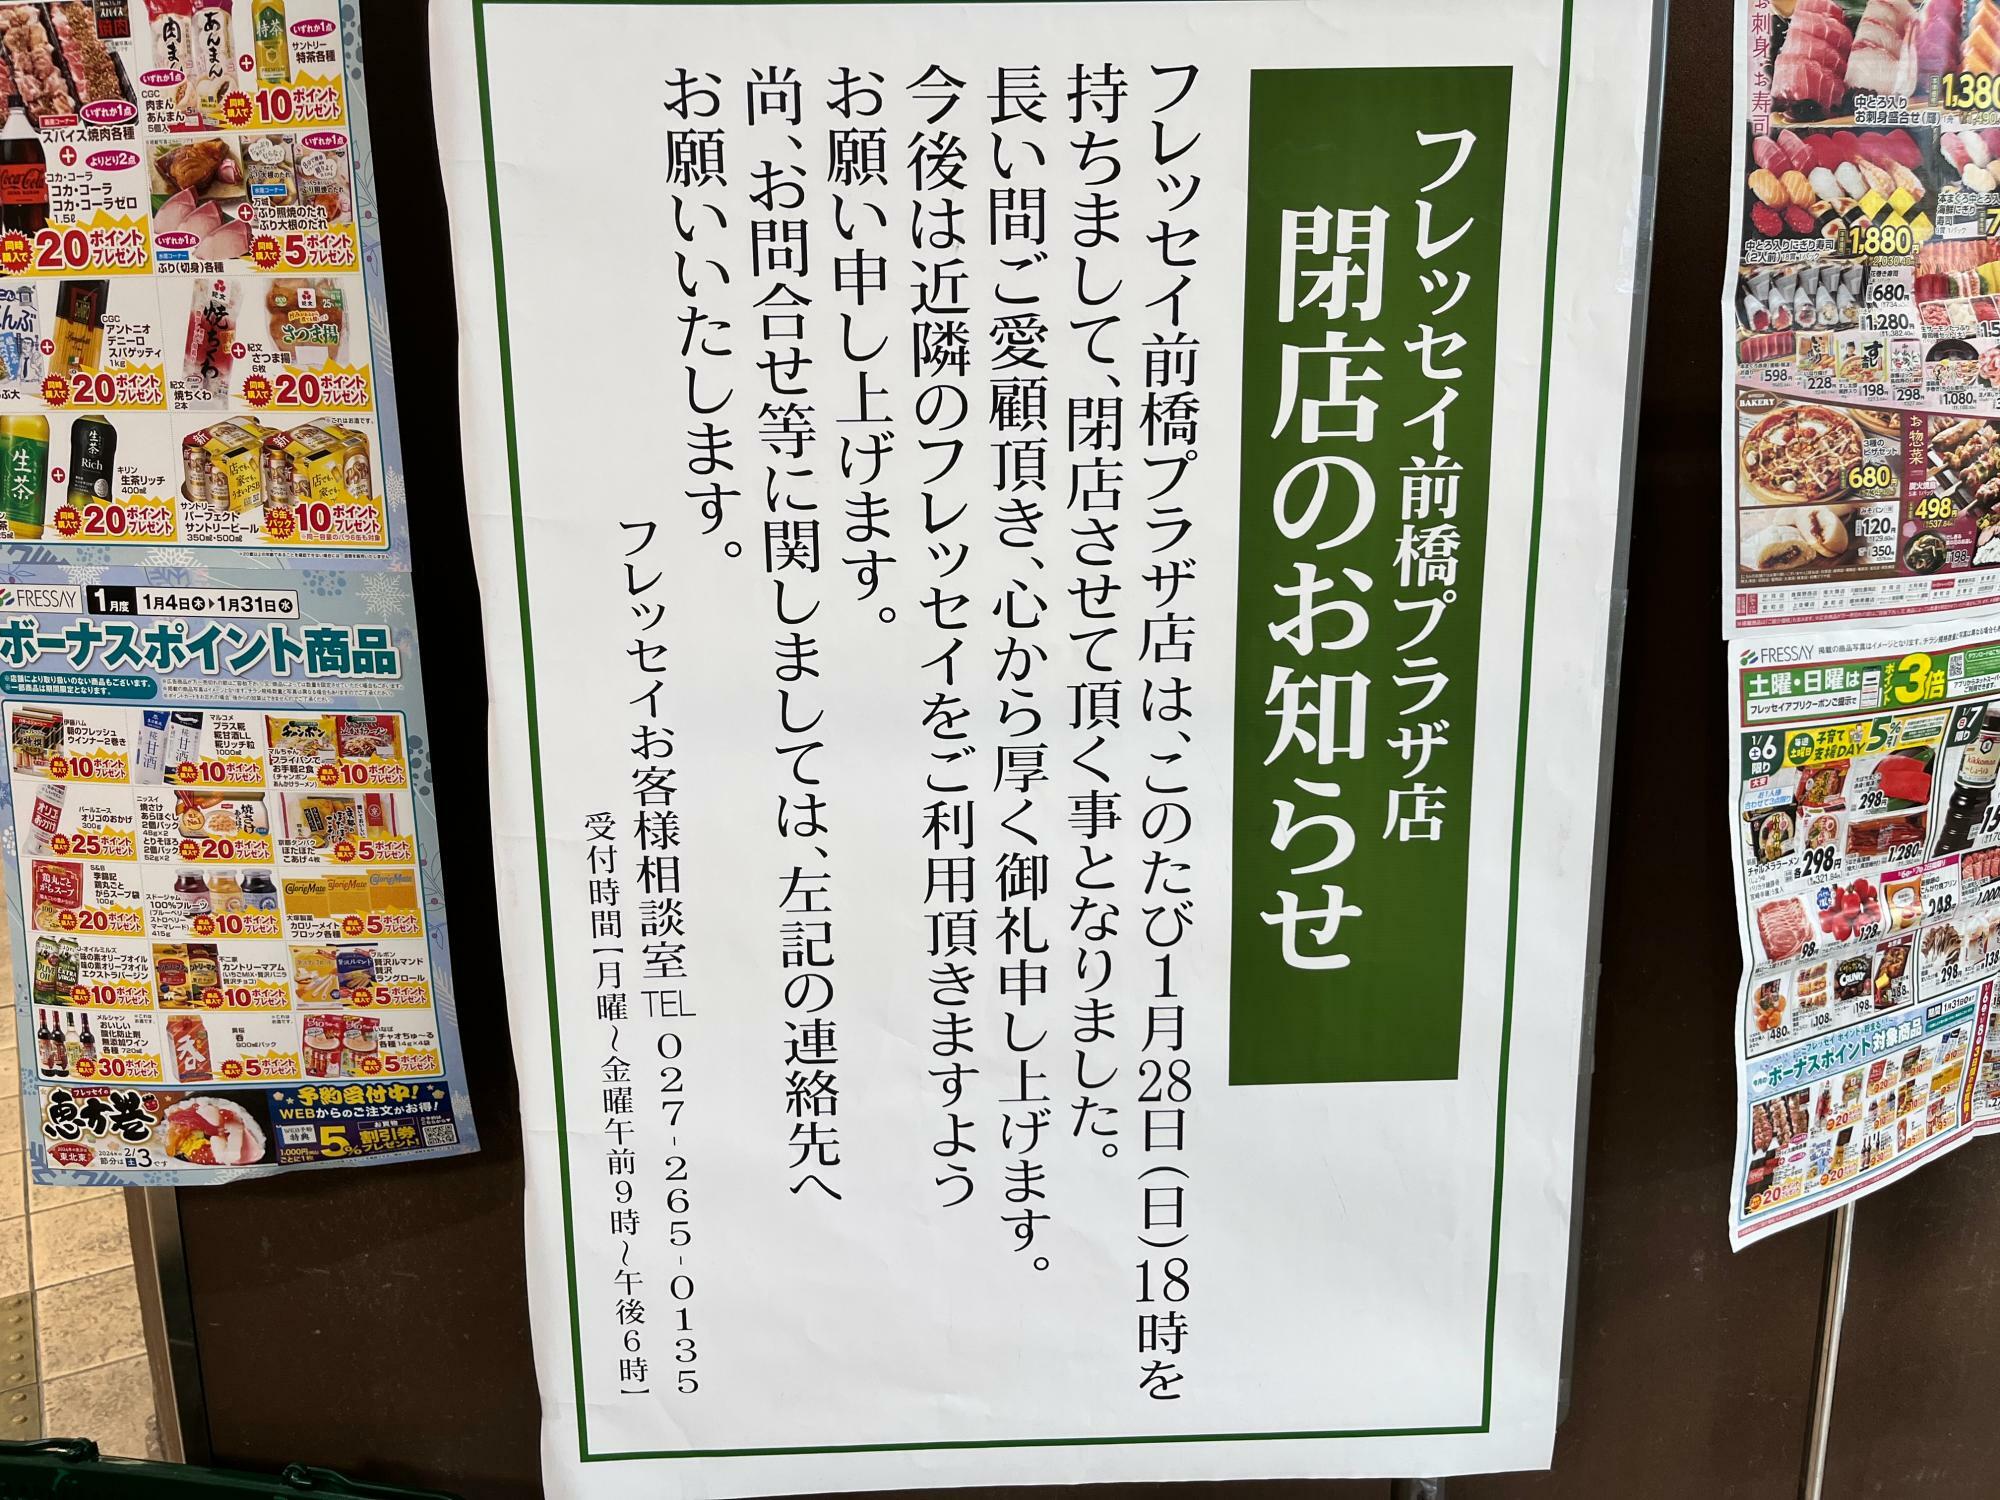 「フレッセイ前橋プラザ店」閉店のお知らせの掲示